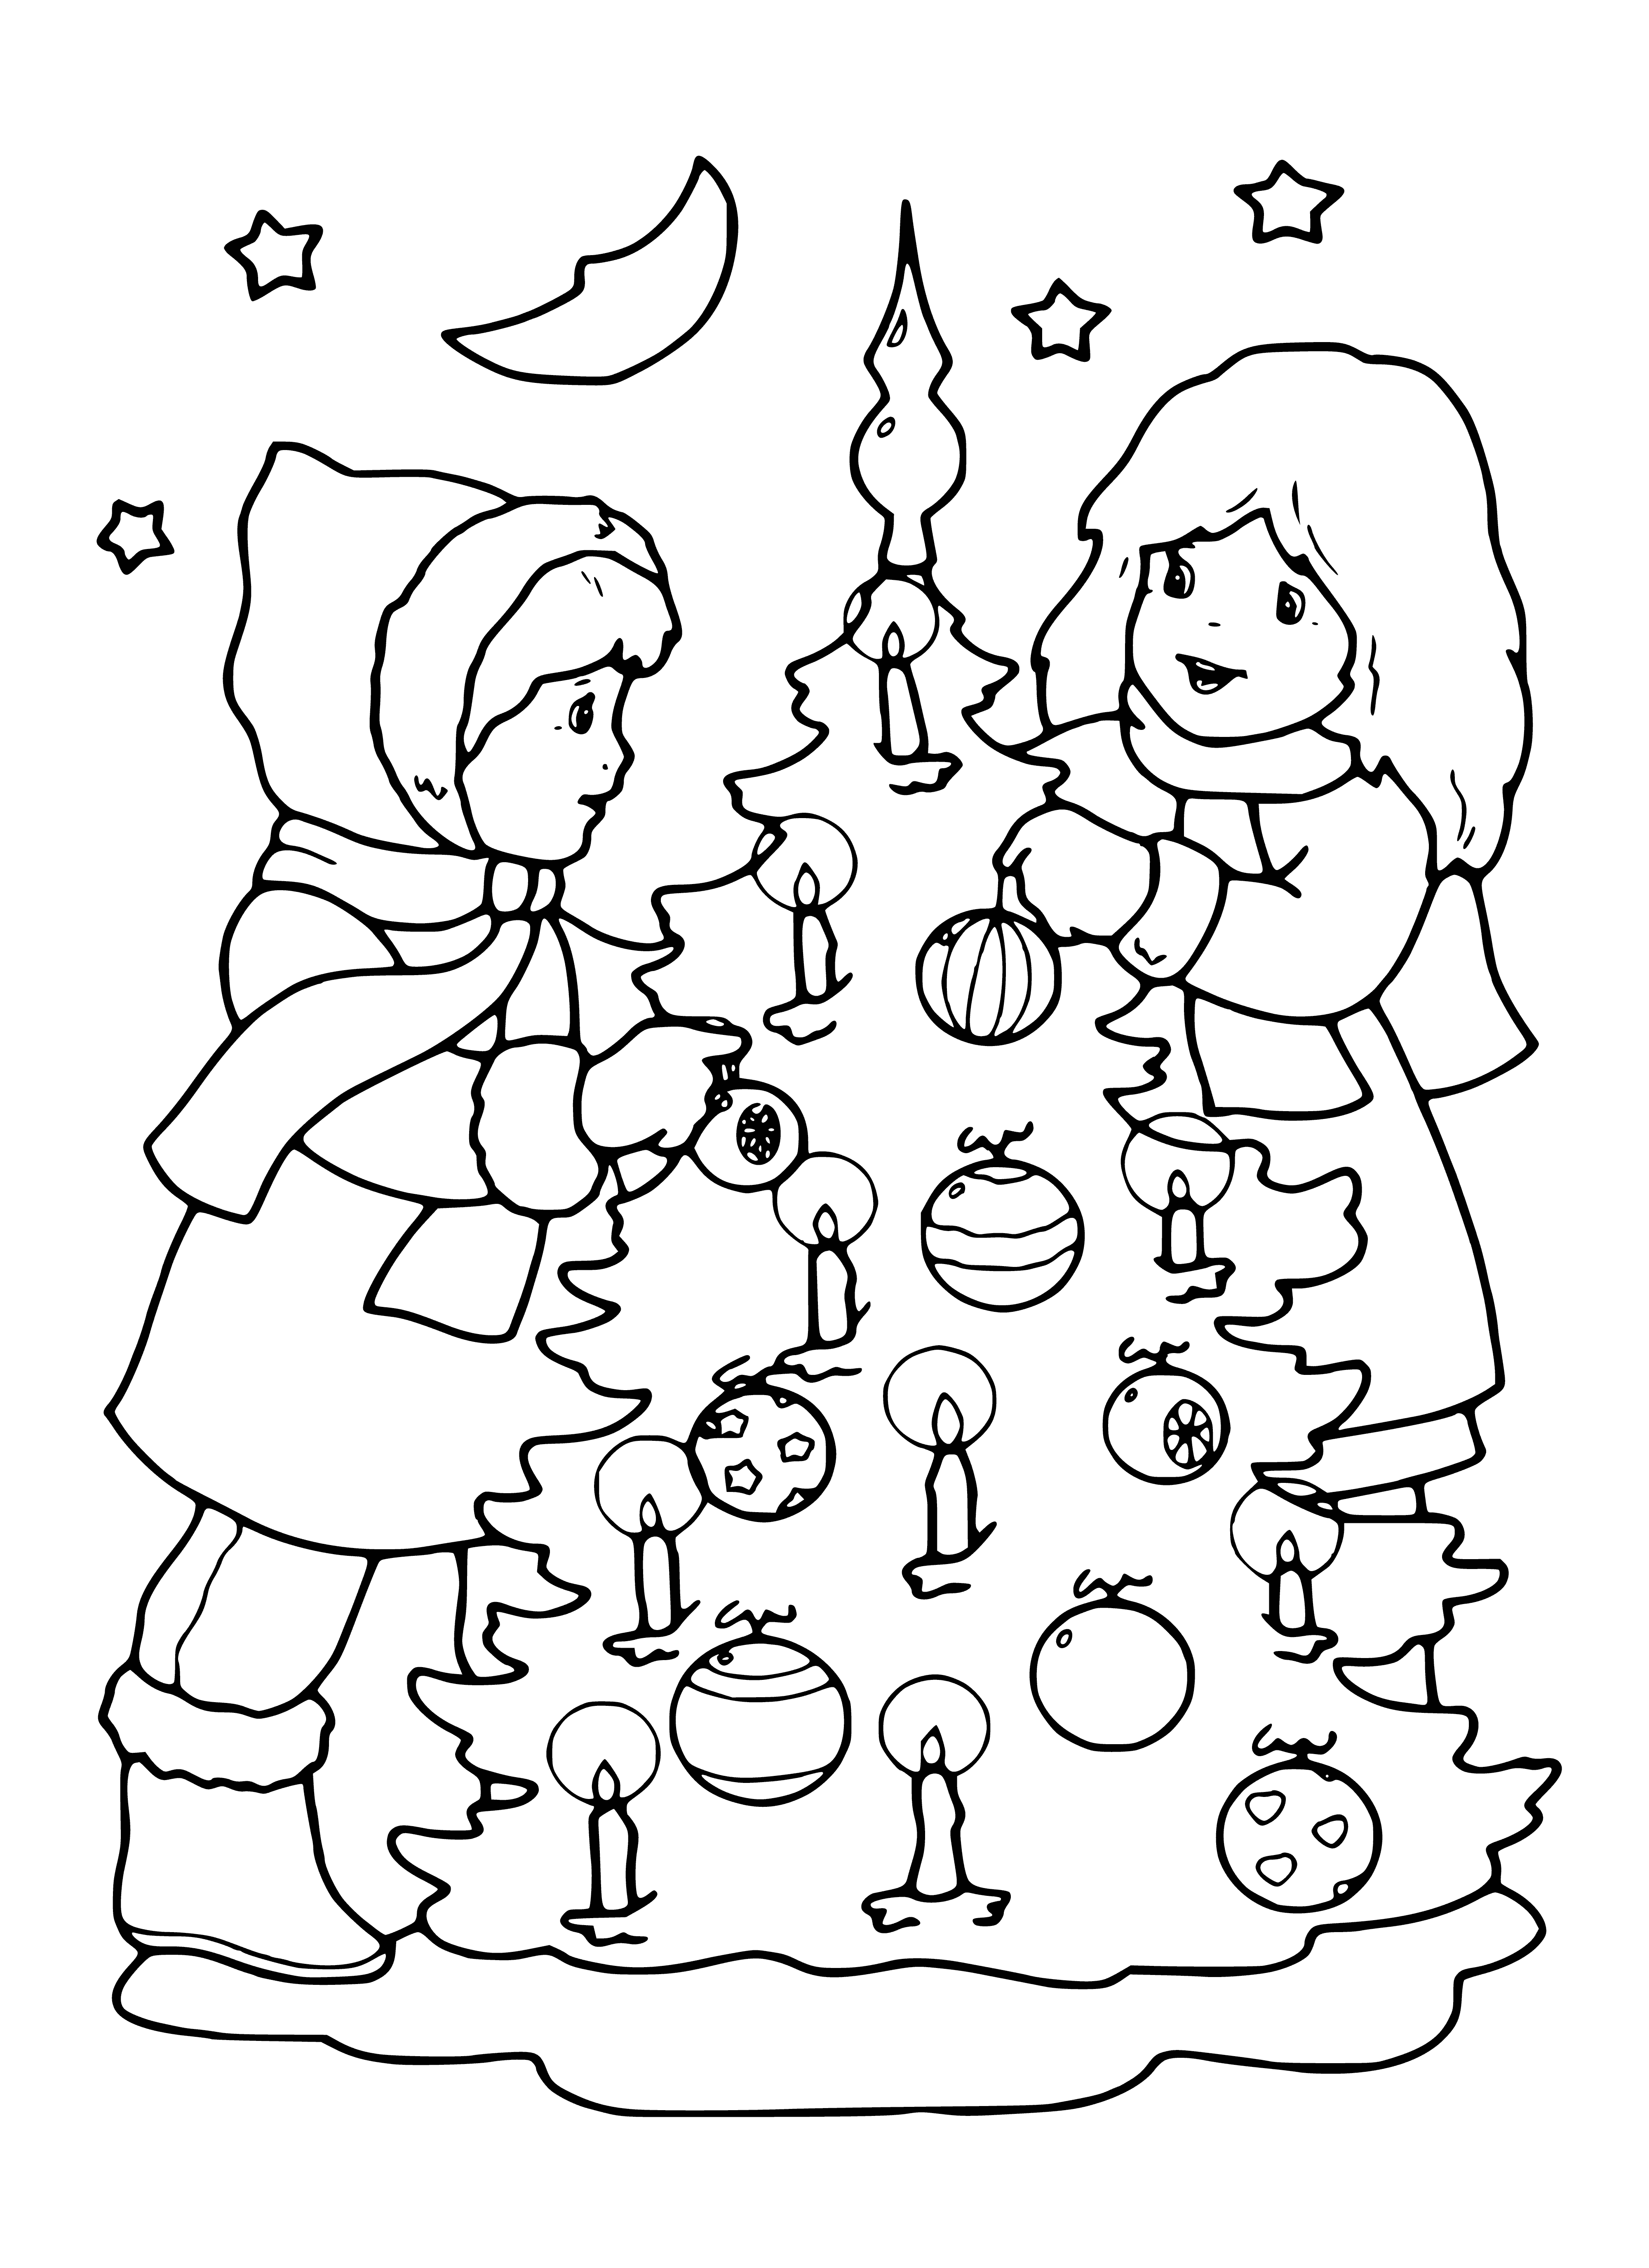 Enfants et arbre de Noël coloriage